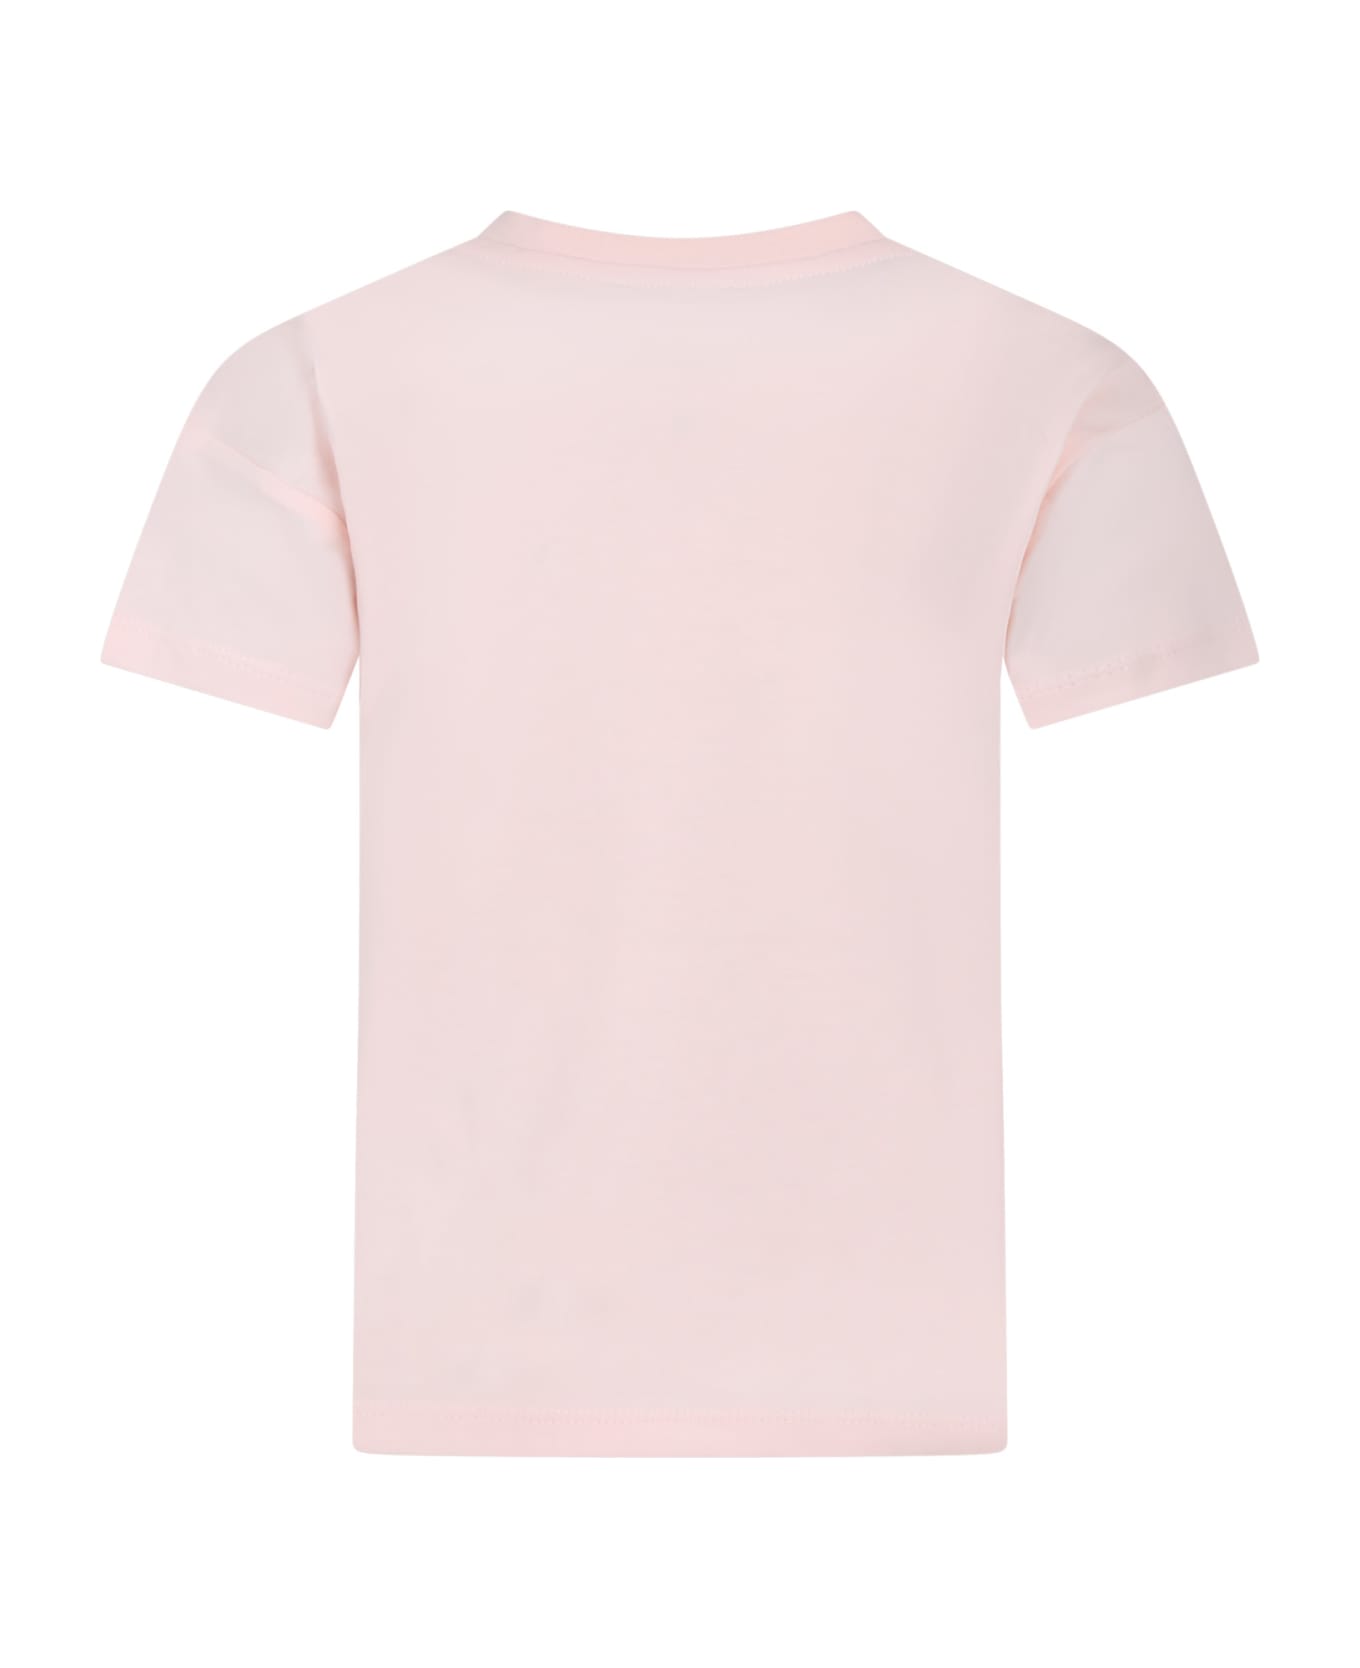 Kenzo Kids Pink T-shirt For Girl With Logo - Militärjackor för Dam från Rosso Polo Ralph Lauren